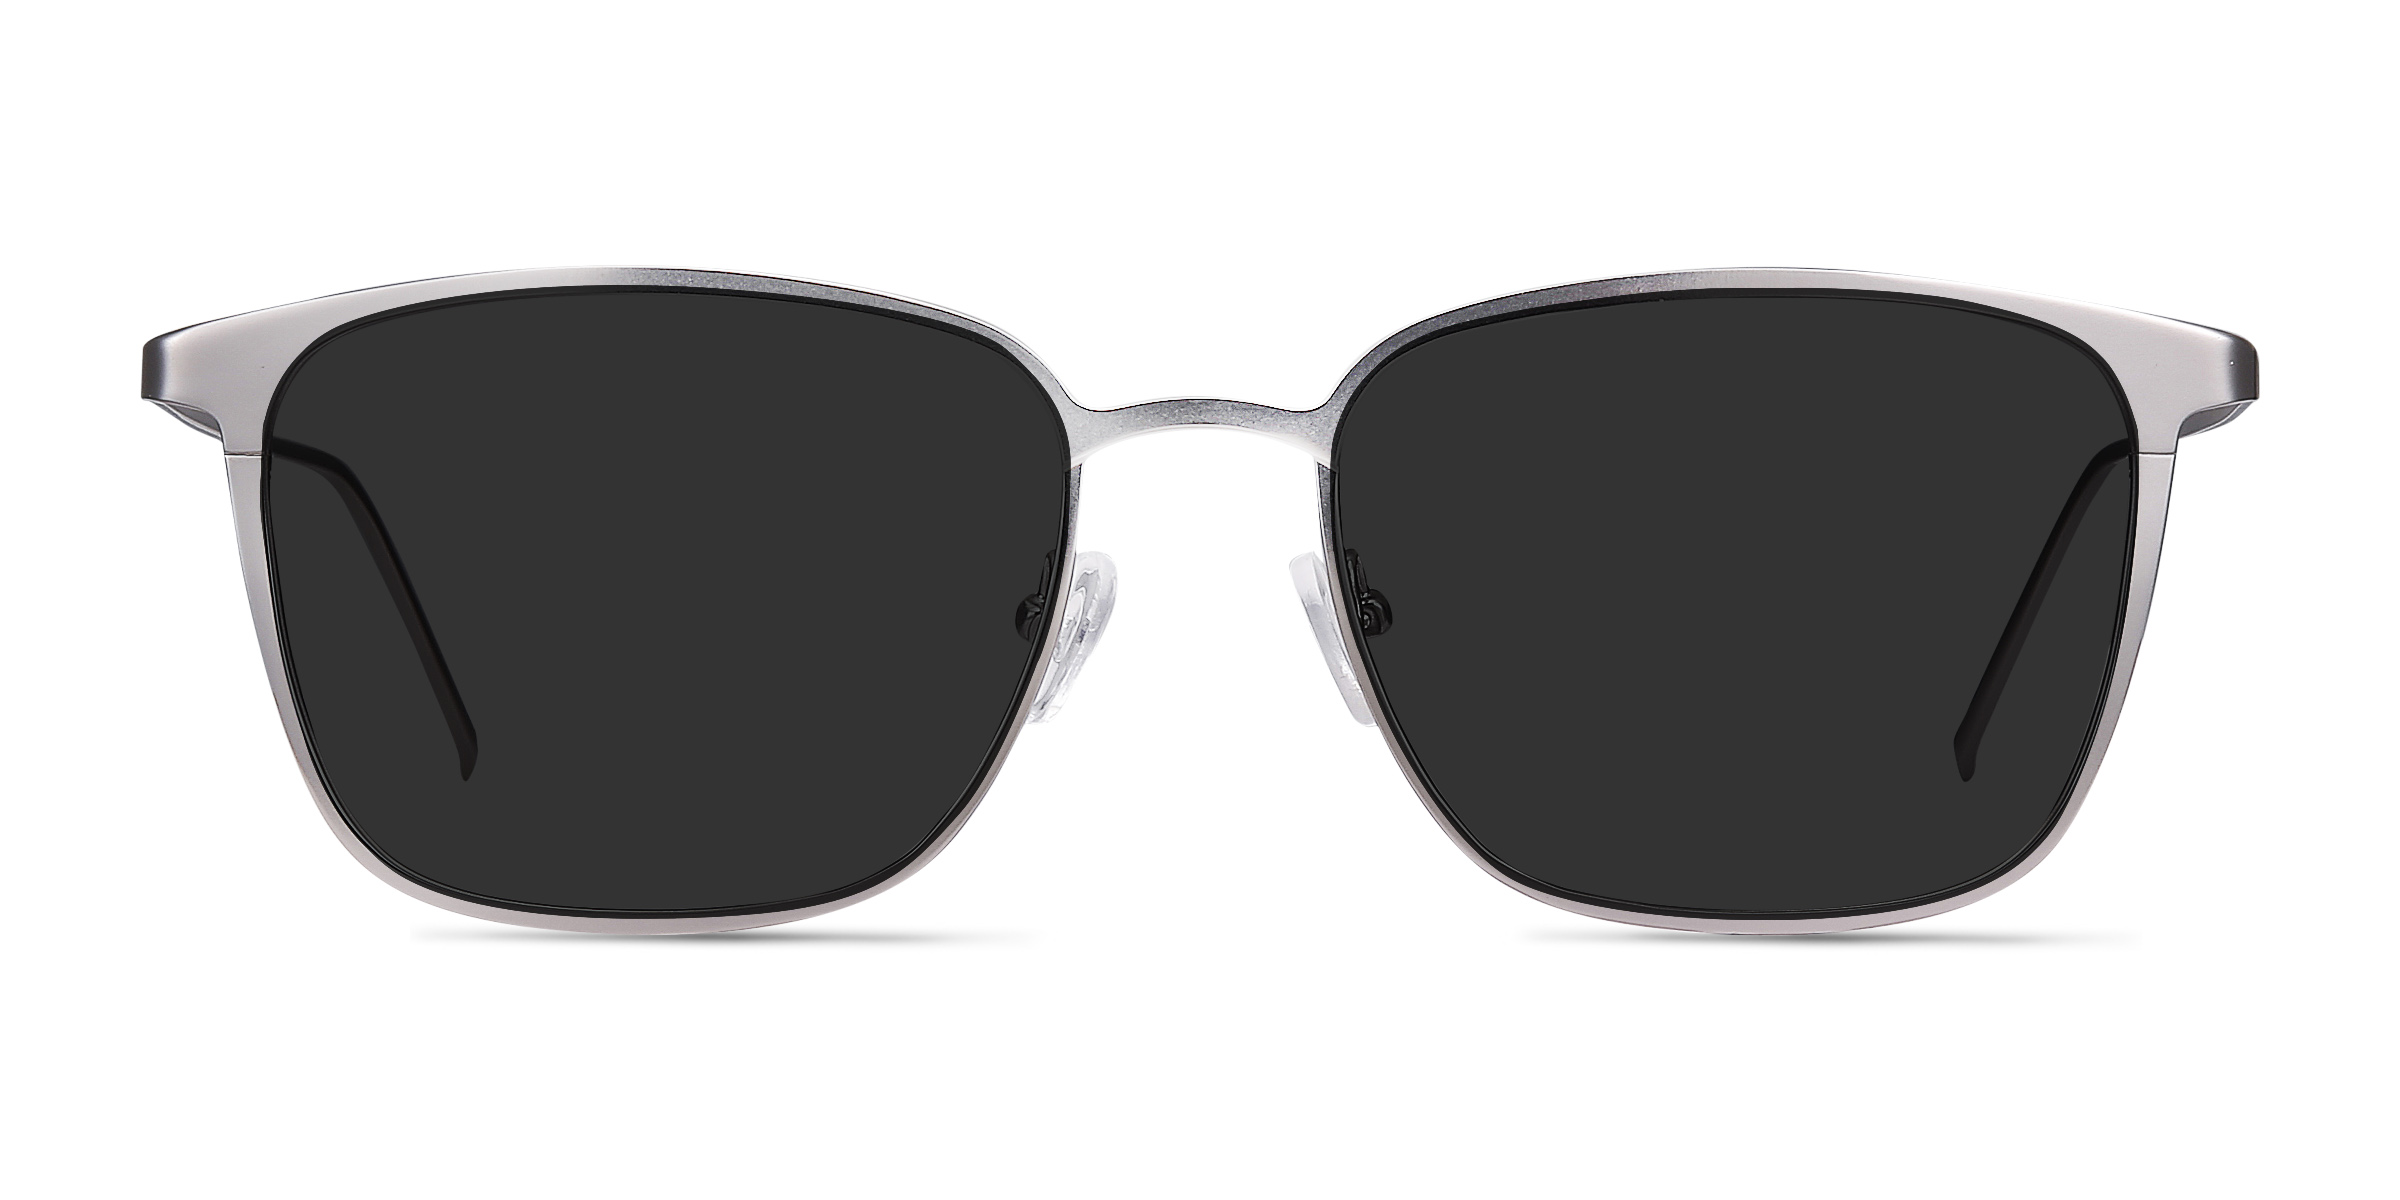 Jolt - Rectangle Gunmetal Frame Sunglasses For Men | Eyebuydirect